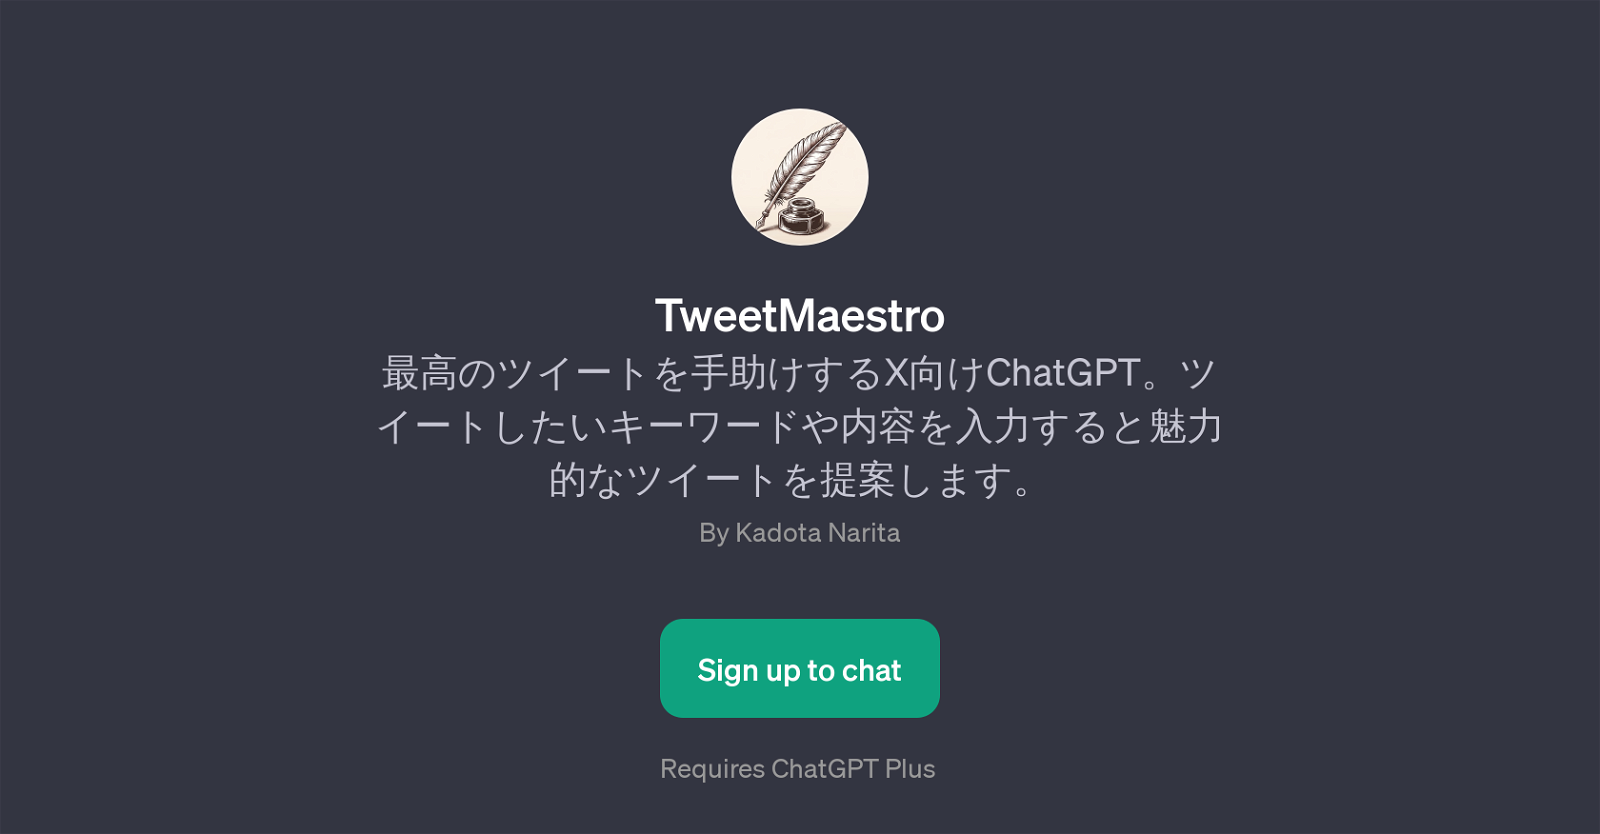 TweetMaestro website